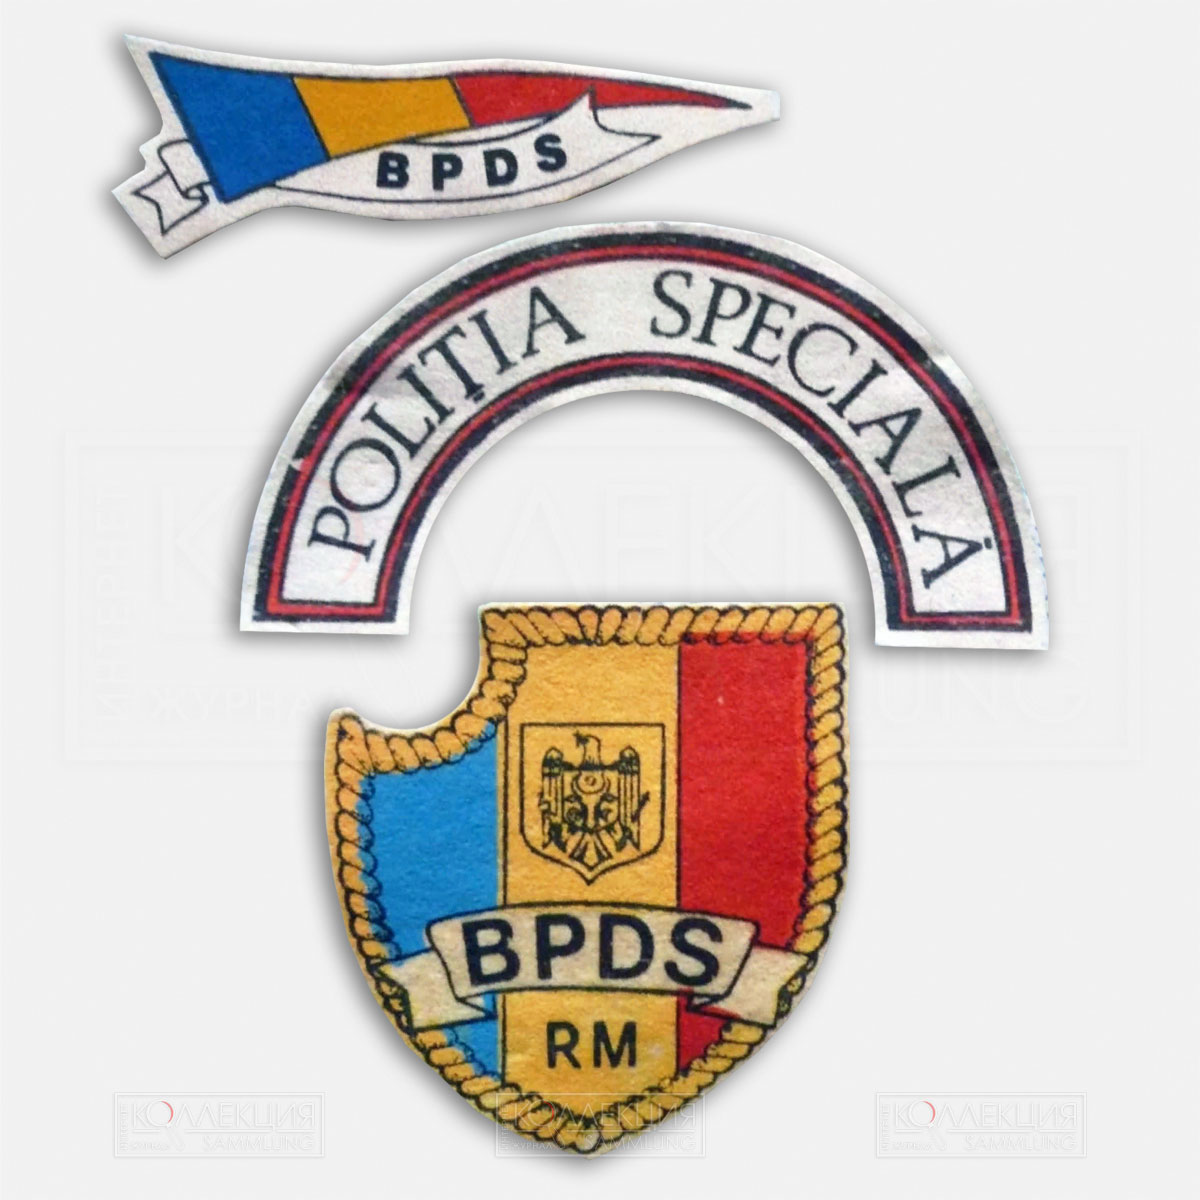 Нашивки Бригады полиции специального назначения (БПСН) «Фулджер» («Молния») (молд. Brigada de poliție cu destinație specială (BPDS) «Fulger»), созданной 5 декабря 1991 года